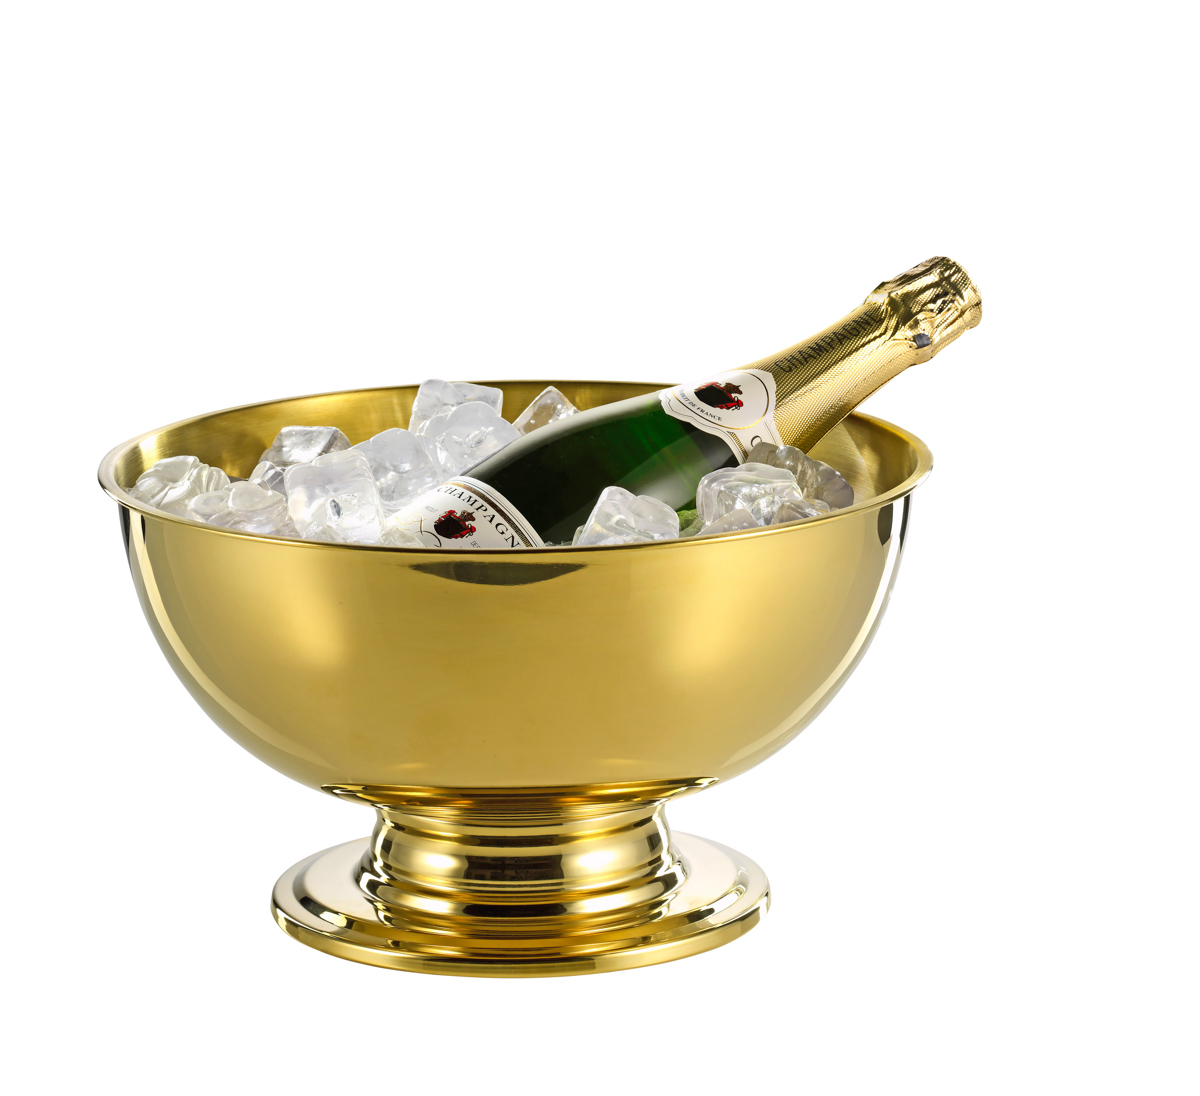 Champagner-Kühler PORTLAND, Edelstahl, 5 ltr. mit goldener PVD-Beschichtung